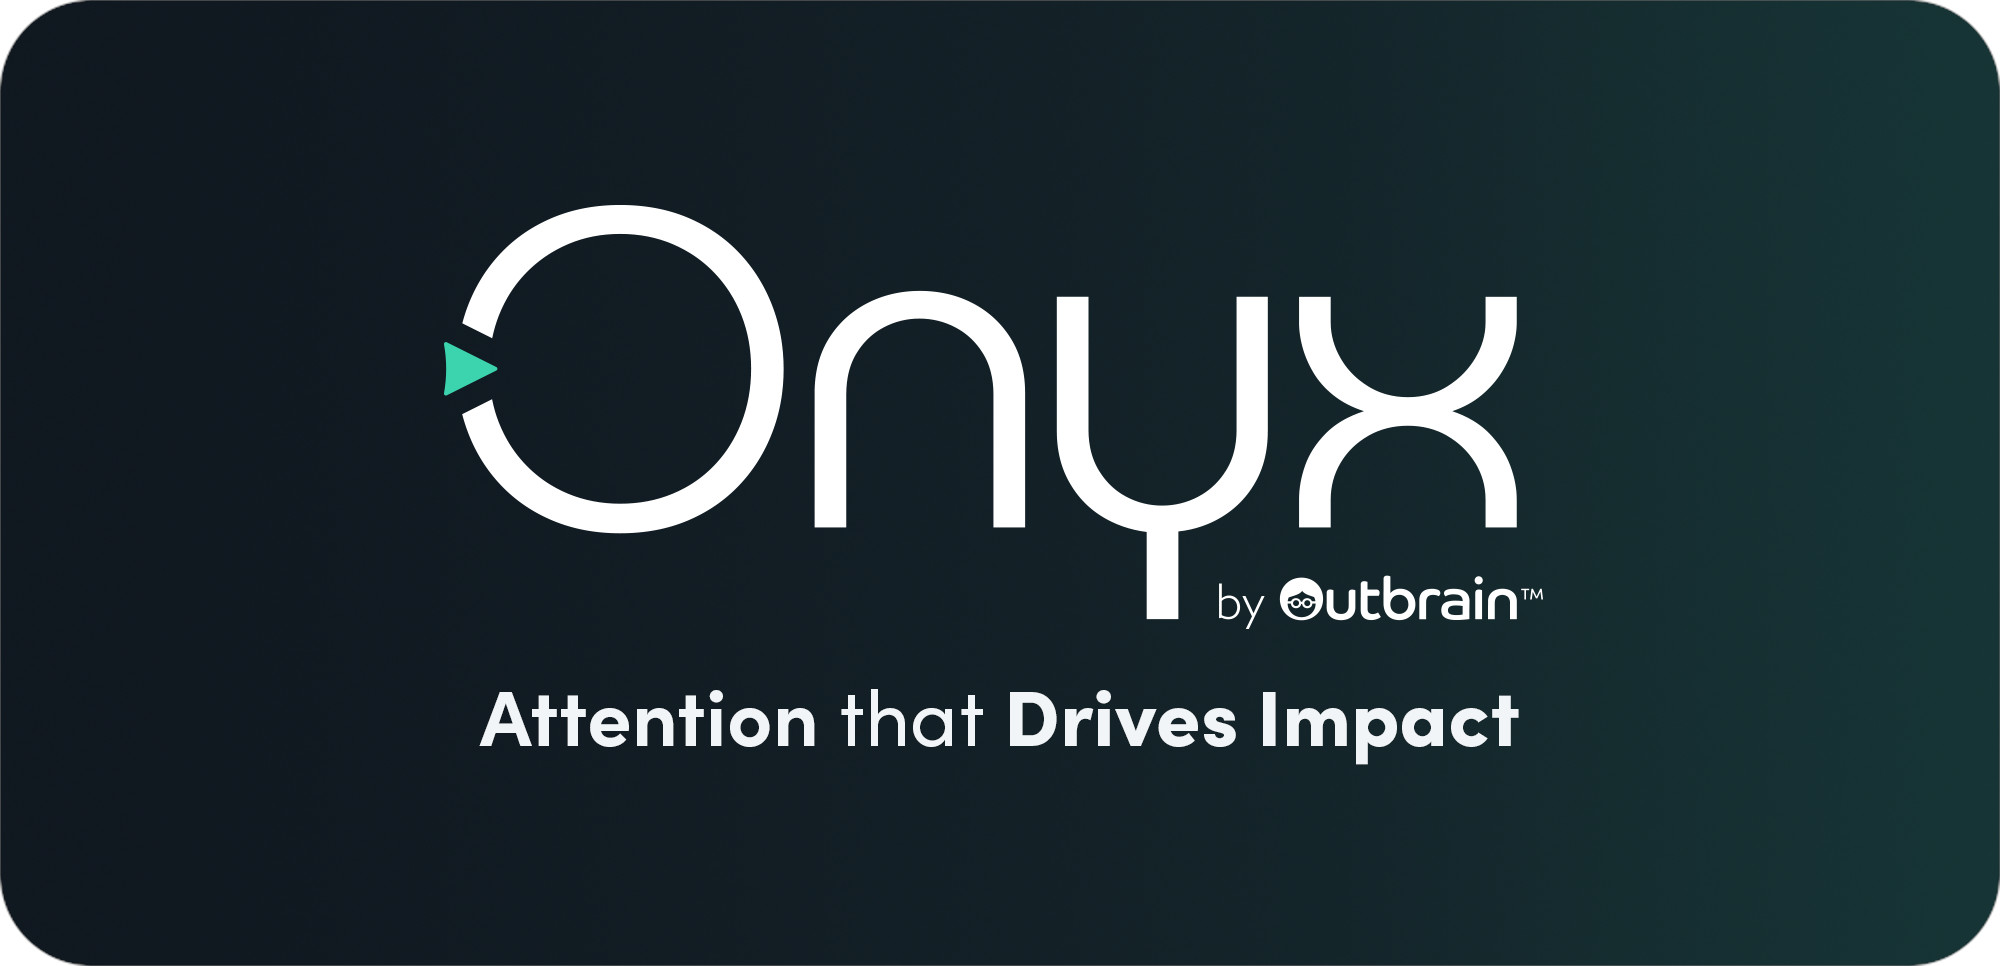 アテンション最大化に向けた新たなブランディングプラットフォーム「Onyx」の日本導入を発表